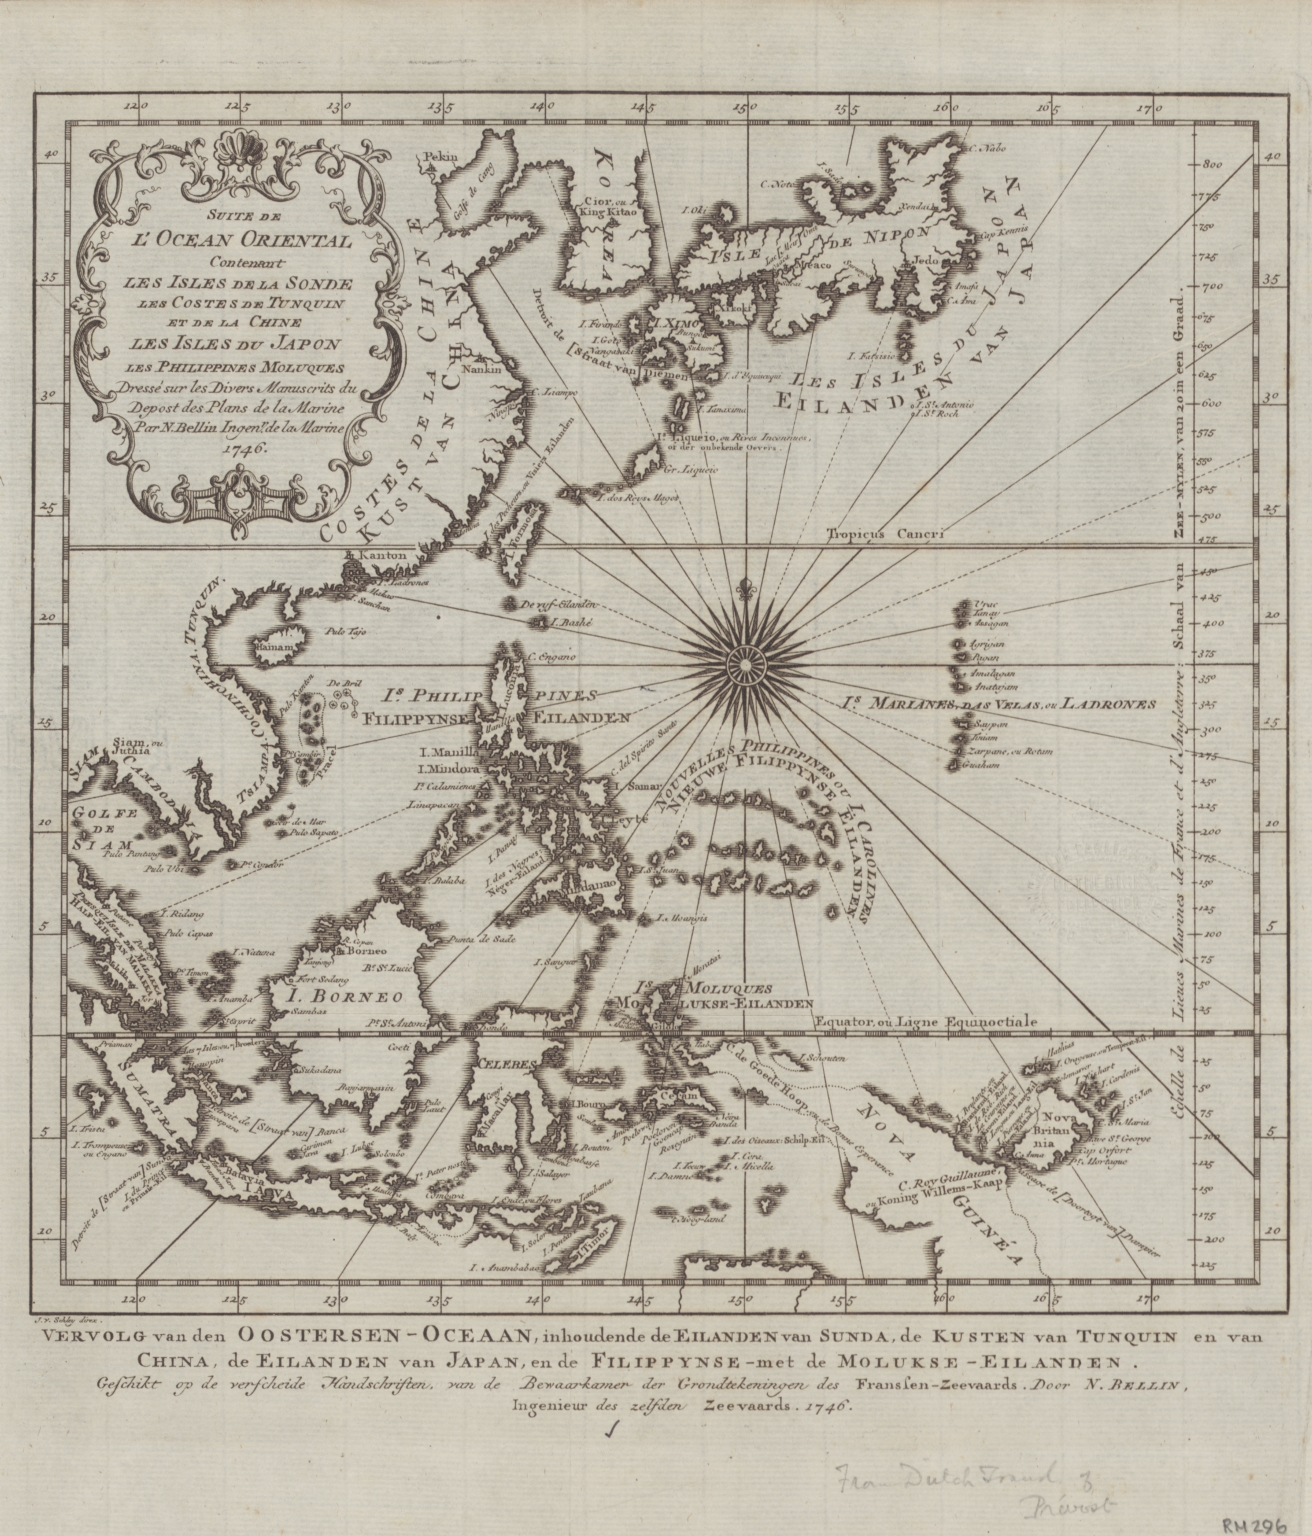 Suite de L'Ocean Oriental : contenant les Isles de la Sonde les Costes de Tunquin et de la Chine, les Isles du Japon, les Philippines Moluques